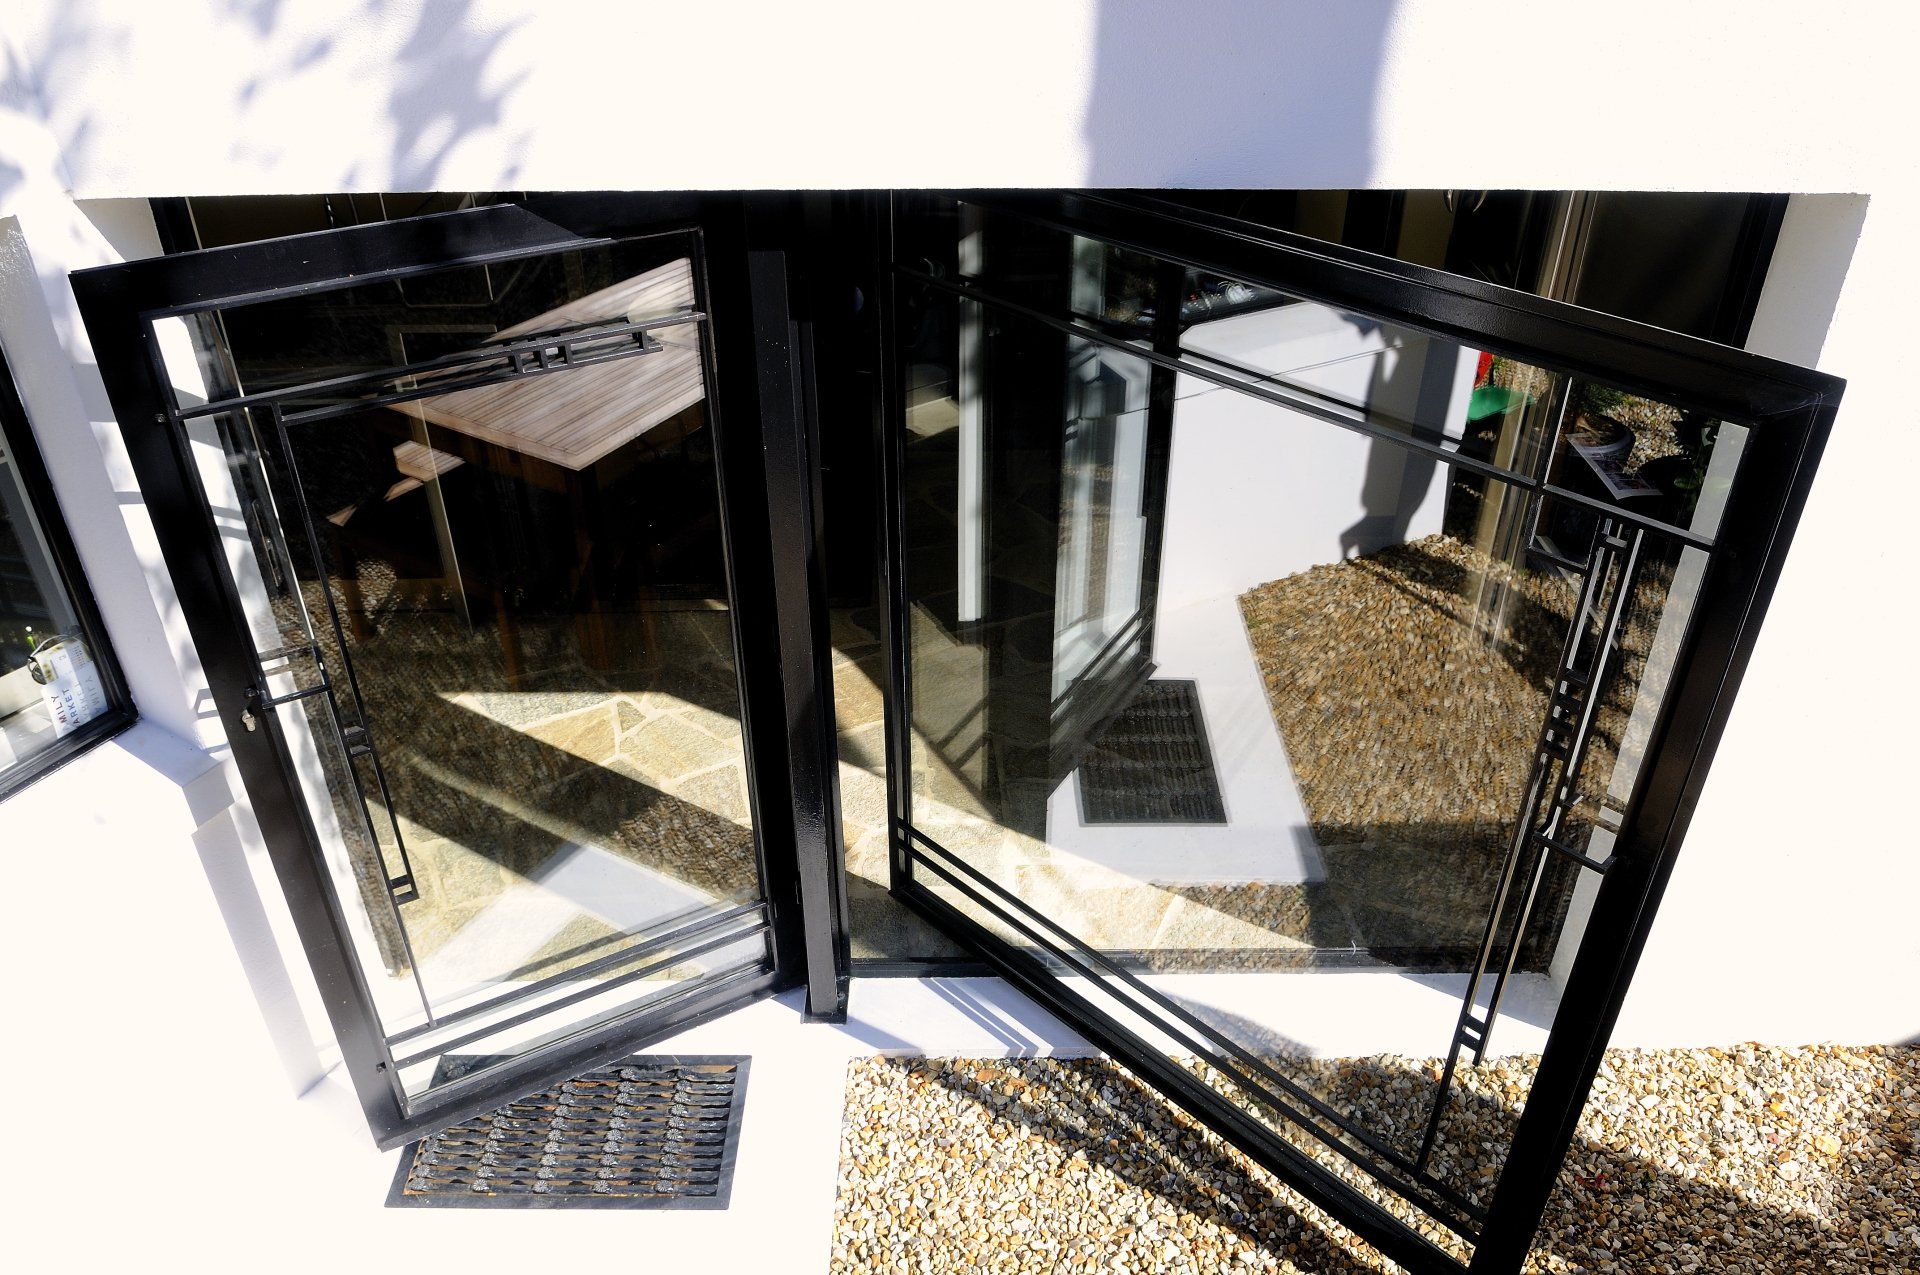 Façade vitrée : Porte ouverture à l'anglaise  et porte  sur pivot , Double  vitrage de sécurité avec profilés métalliques